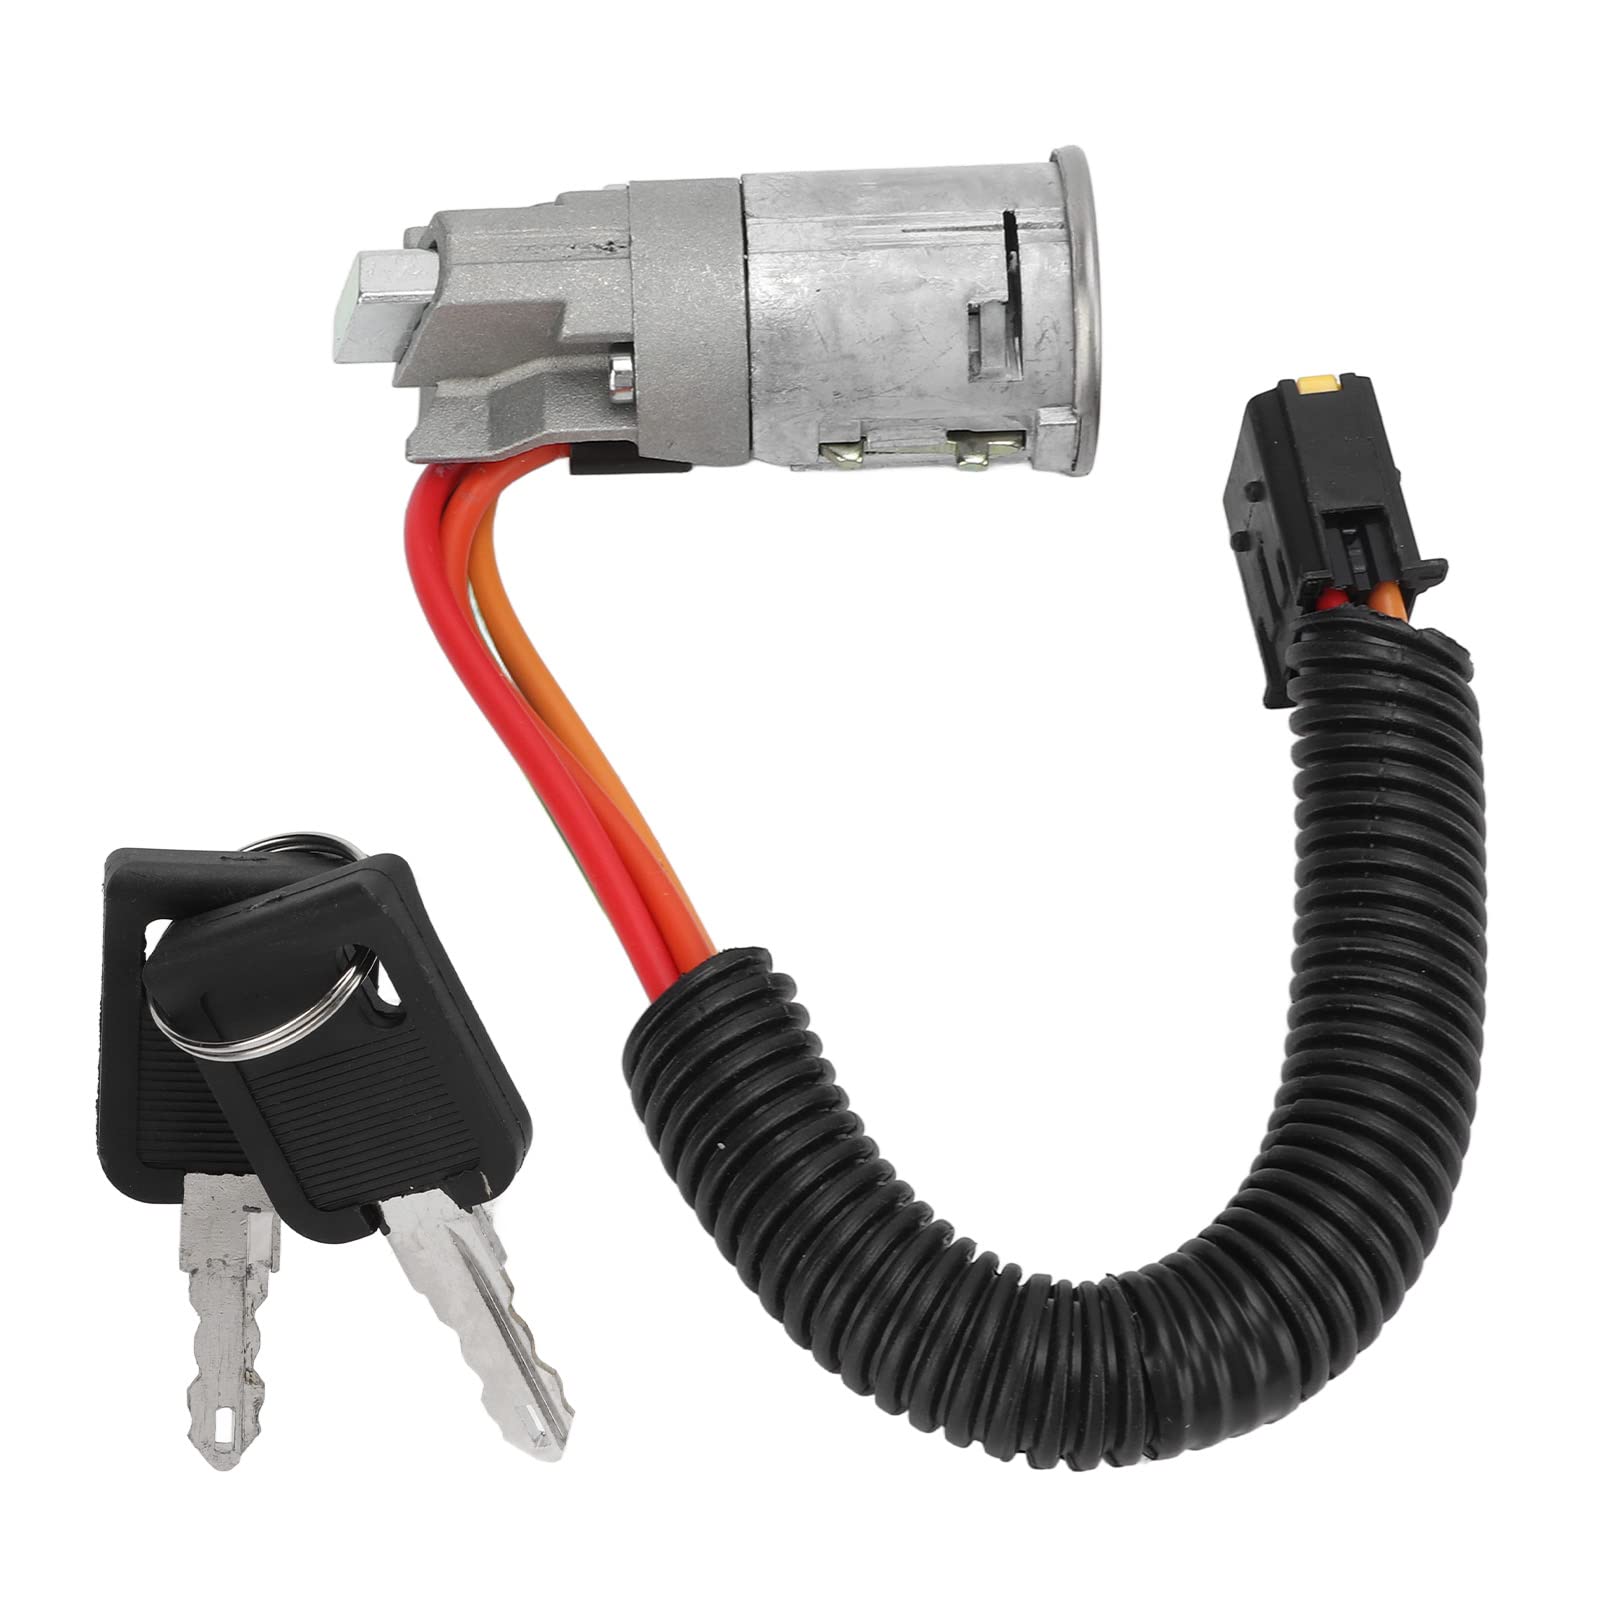 RYSH 7701471220, rostfreier Plug-and-Play-Zündschloss-Schlüsselsatz, verzinkt, Diebstahlschutz für Autos